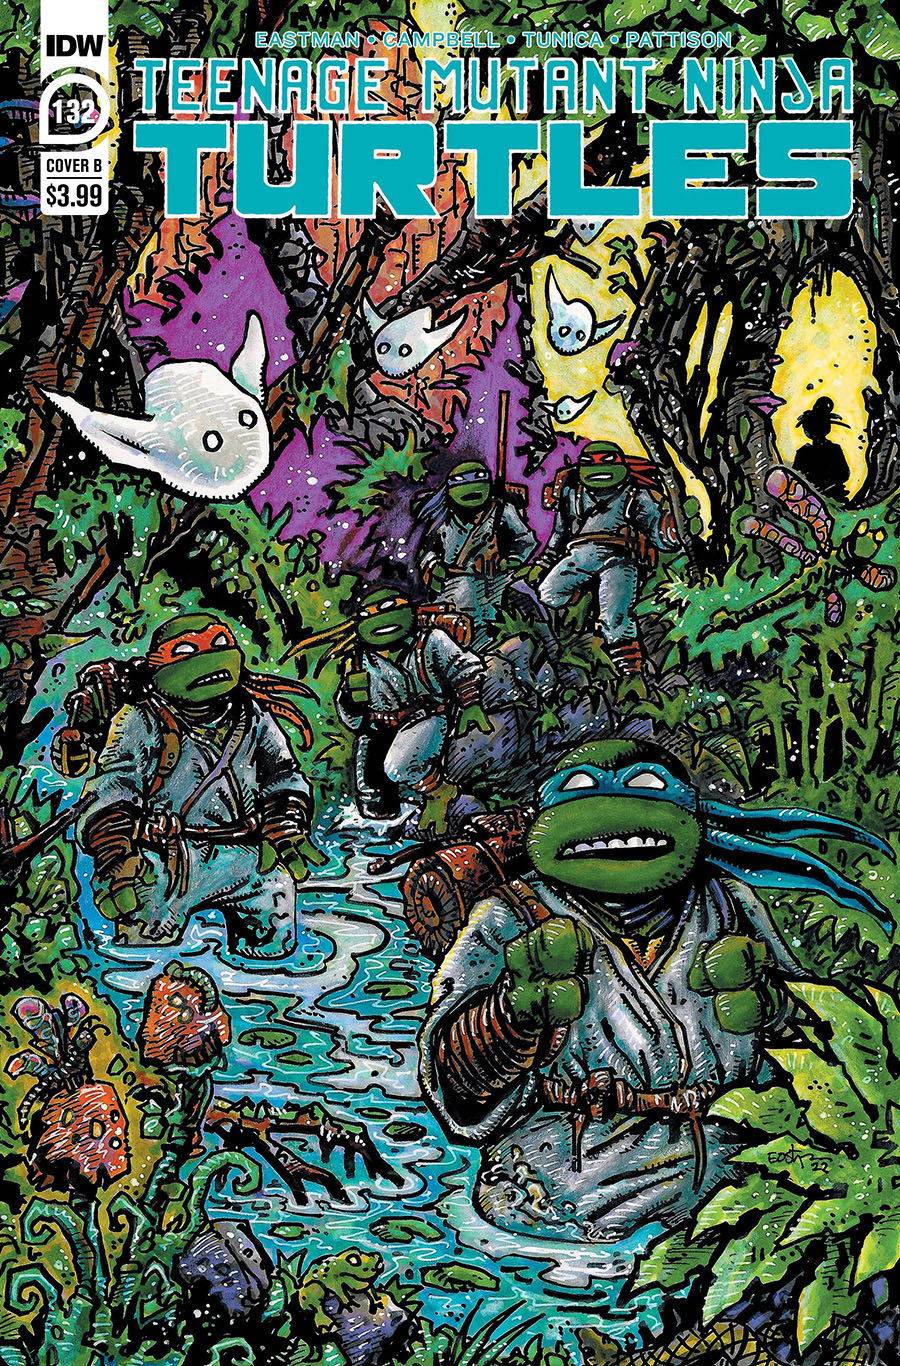 Teenage Mutant Ninja Turtles Vol 5 #132 Cover B Variant Kevin Eastman Cover